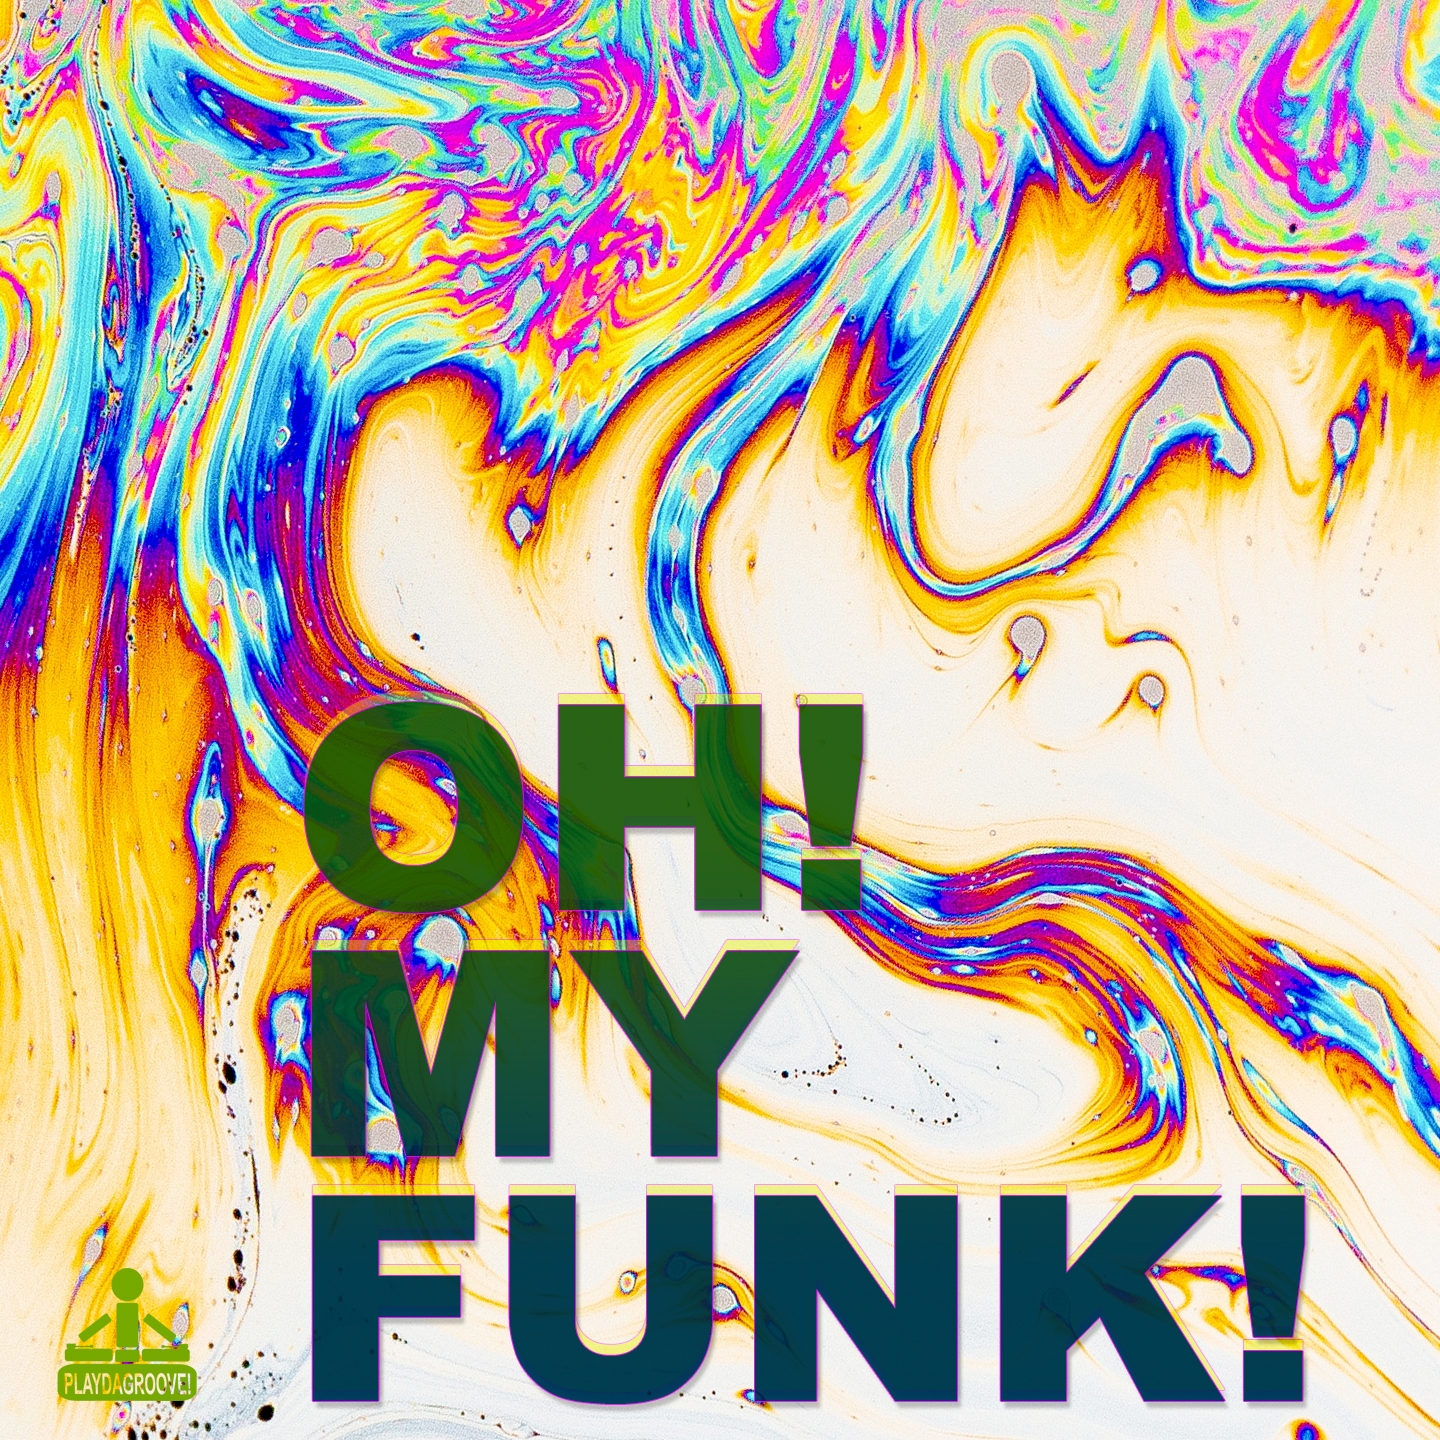 Blah Funk Flash! (Remix)